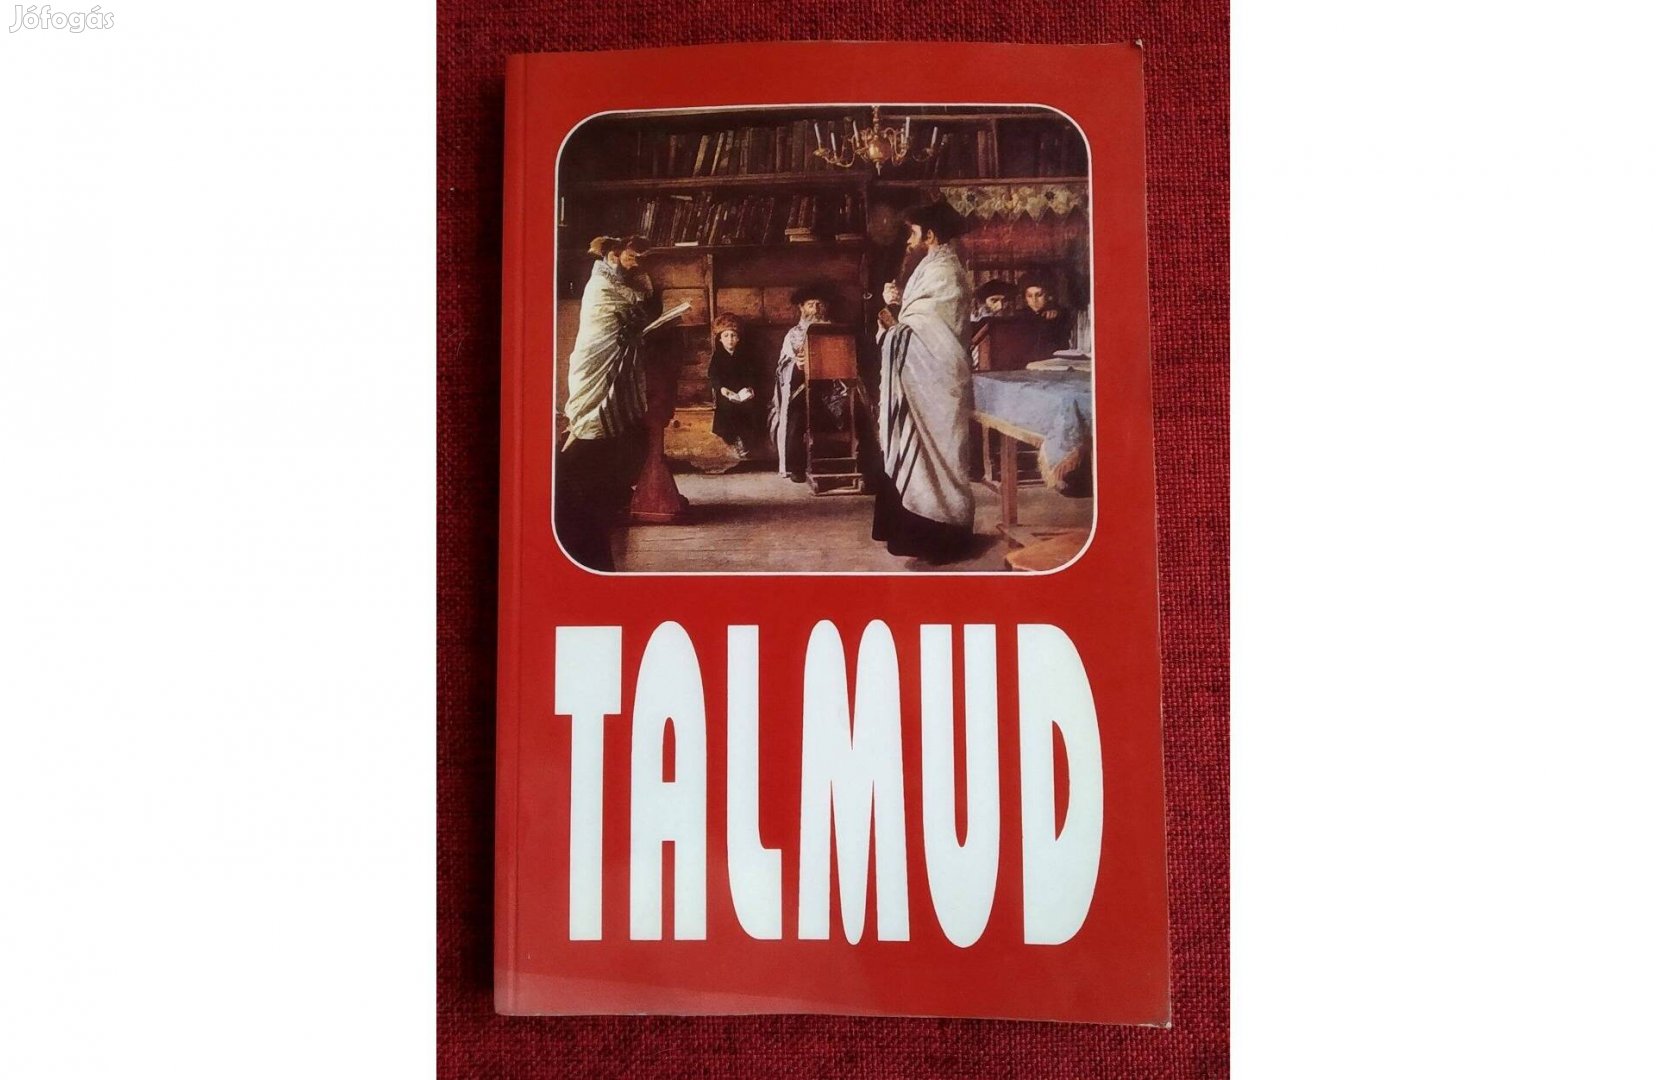 A Babilóniai Talmud